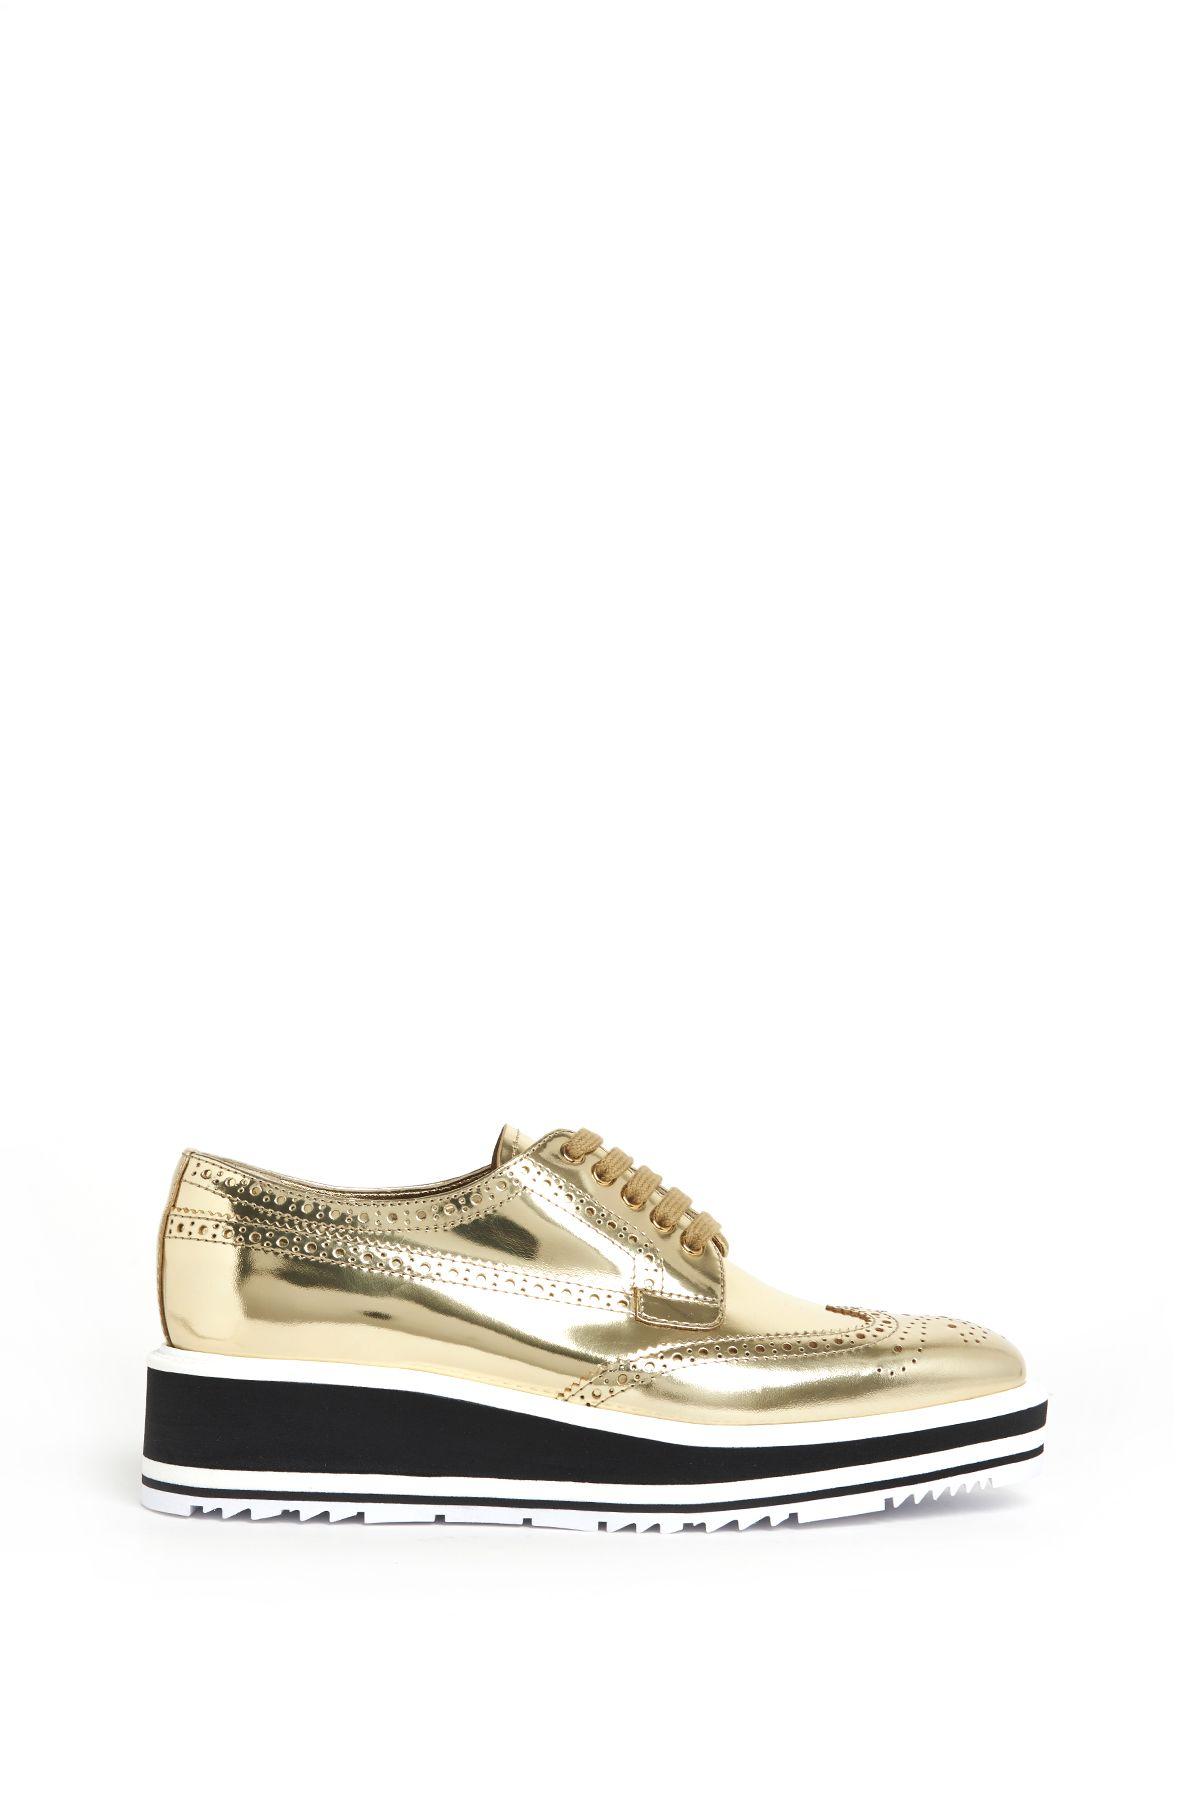 prada shoes gold